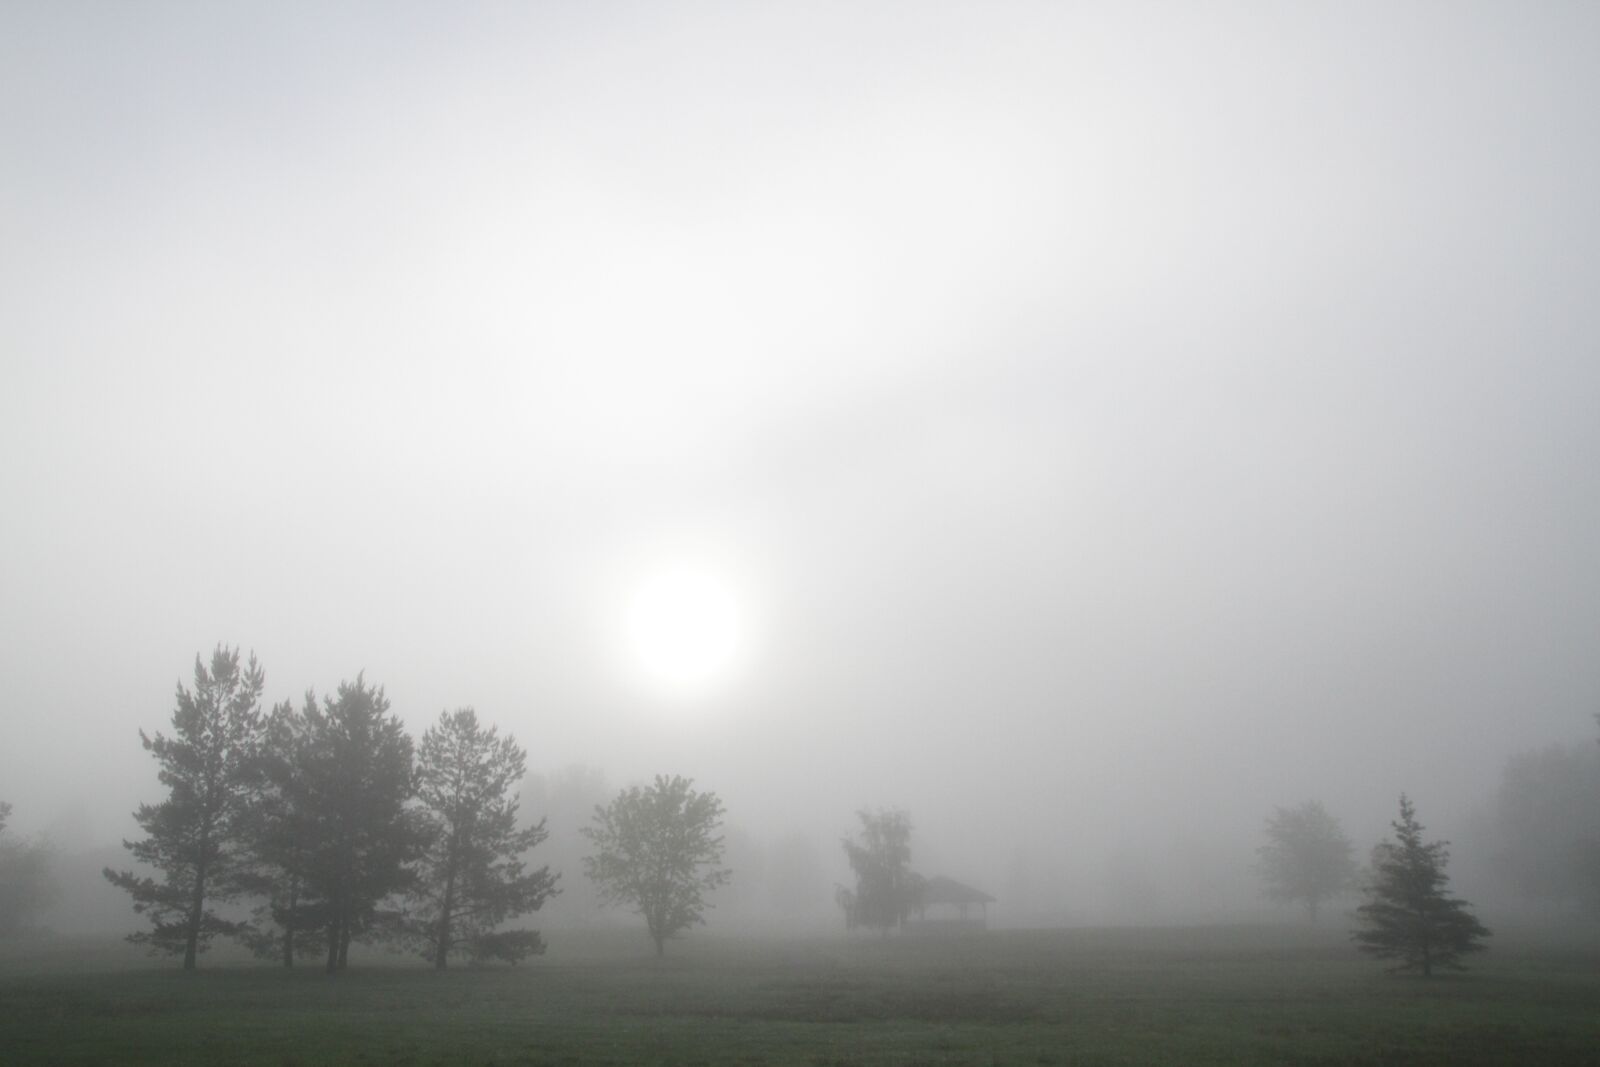 Canon EOS 7D sample photo. Foggy park, fog, trees photography